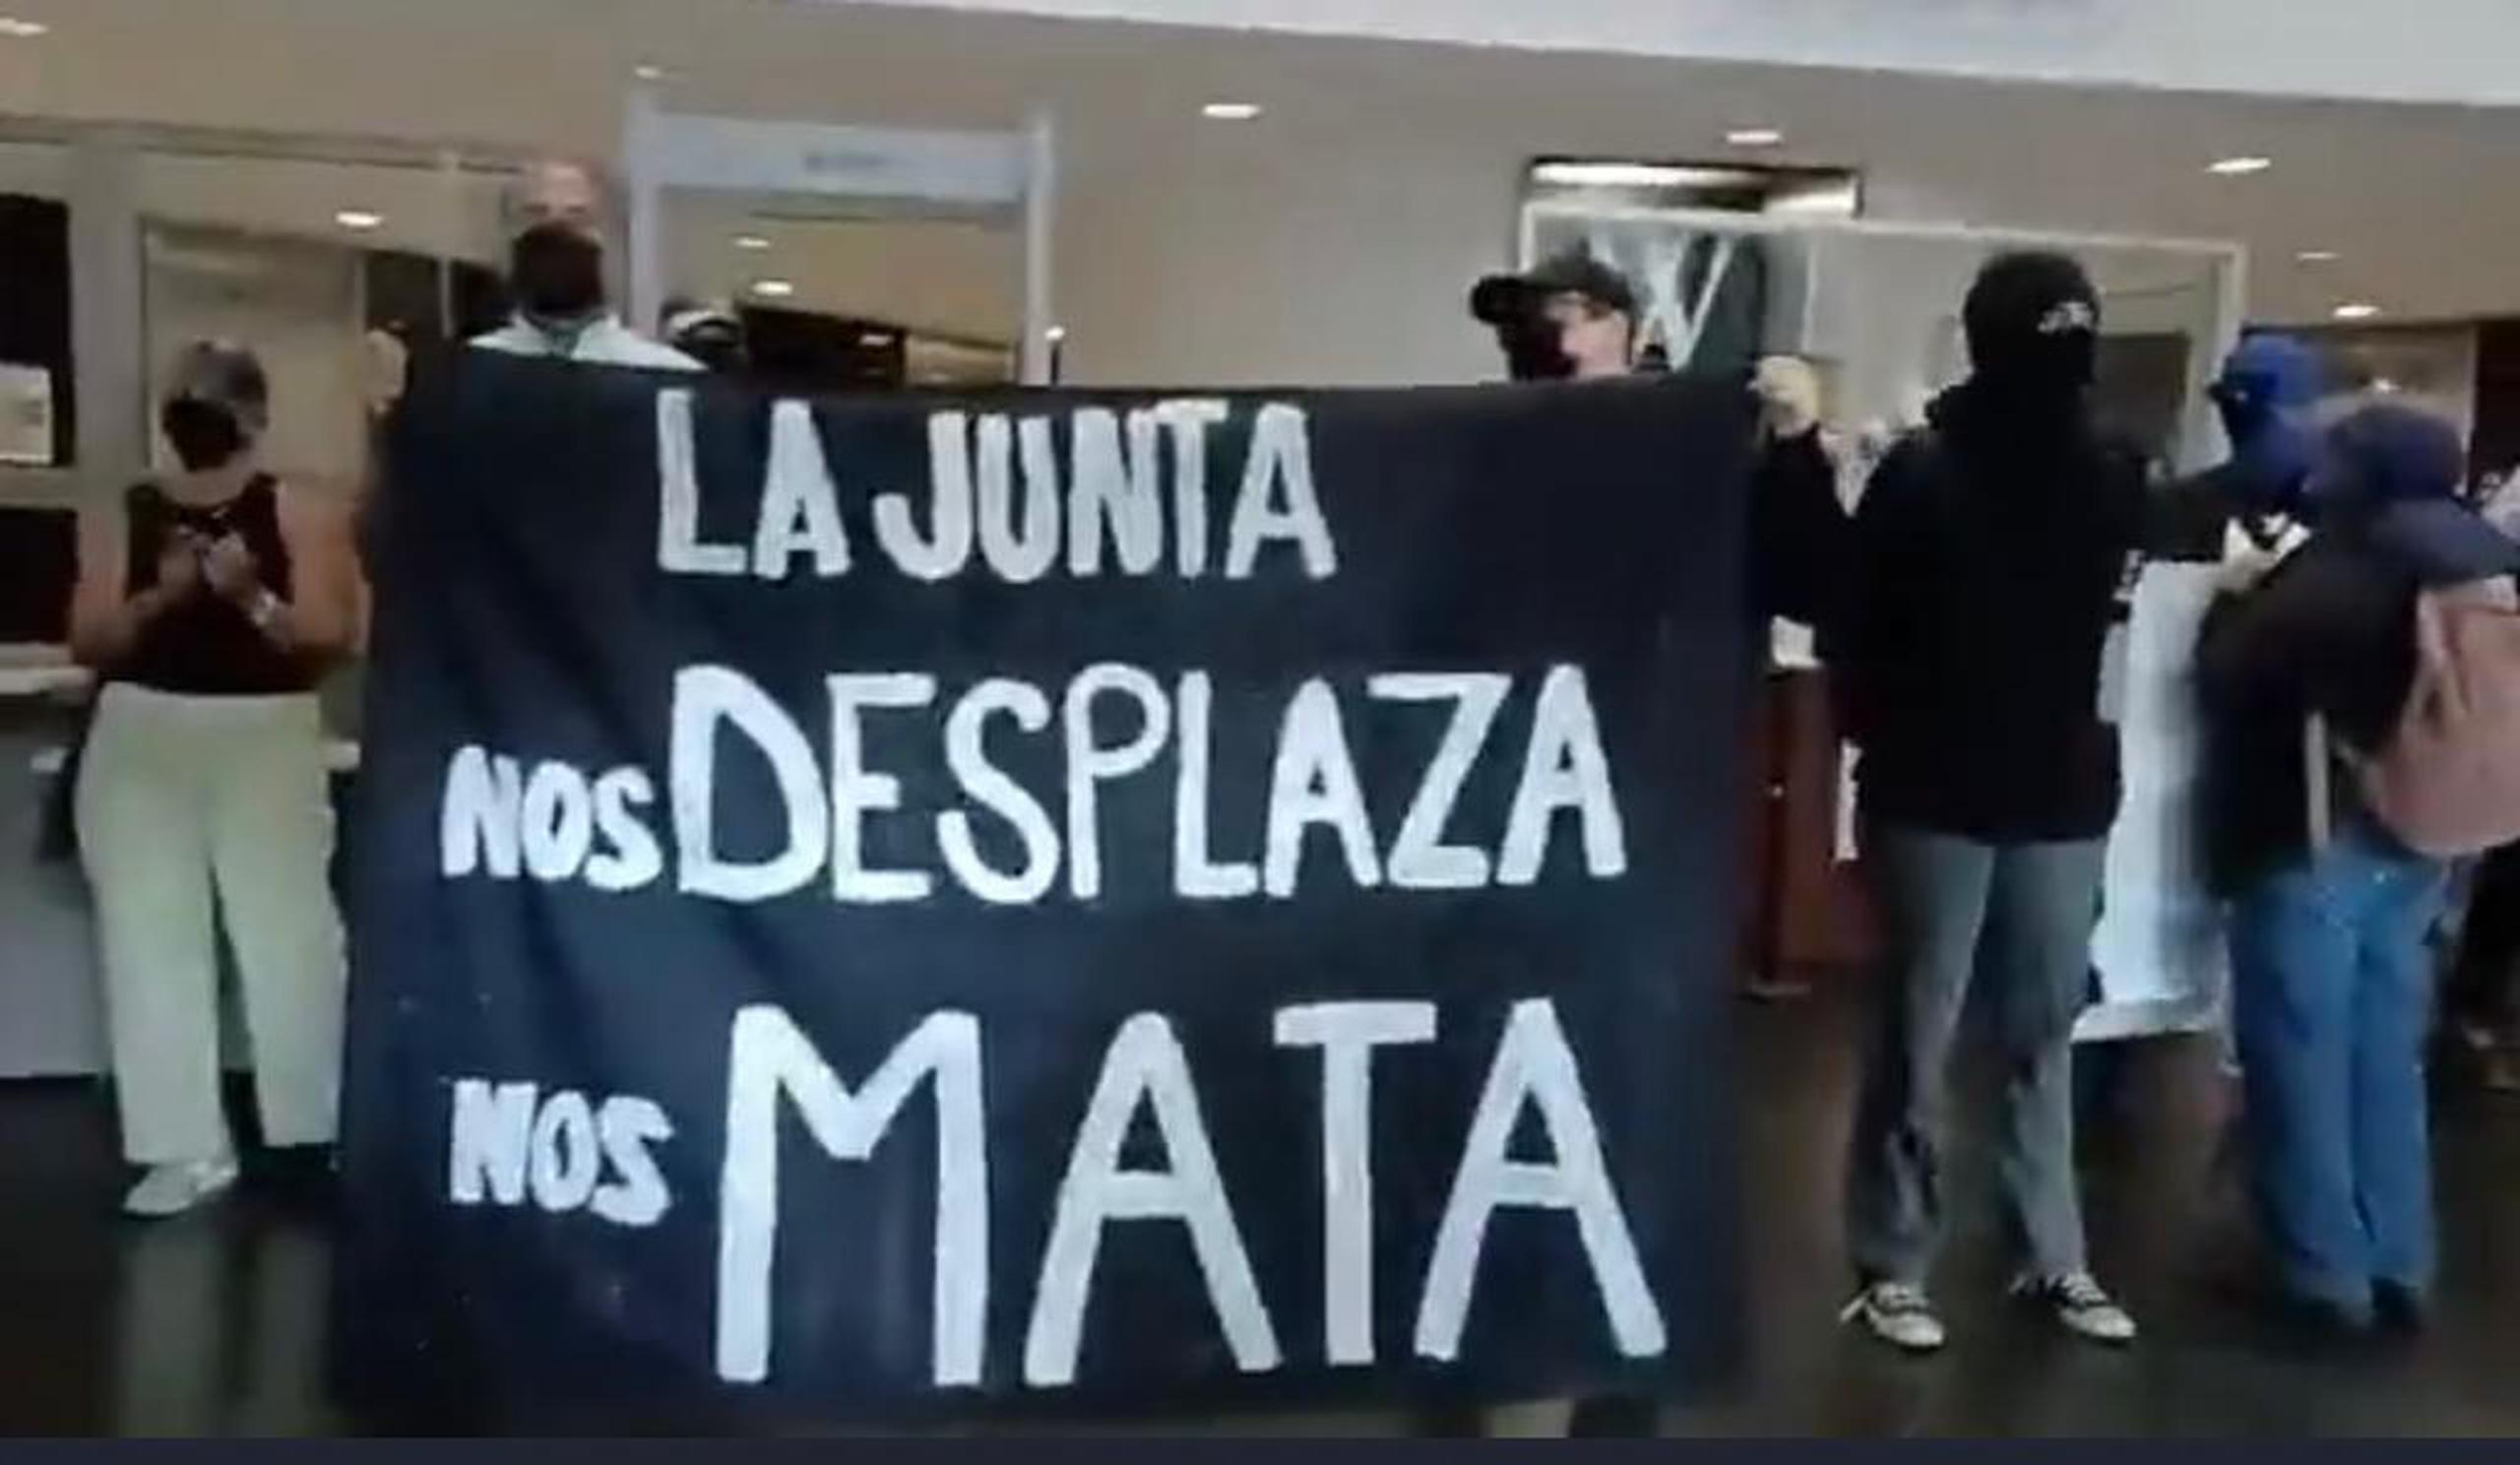 Protesta del grupo "Jornada se acabaron las promesas" en el vestíbulo donde ubica la sede de la Junta de Supervisión Fiscal, en San Juan.